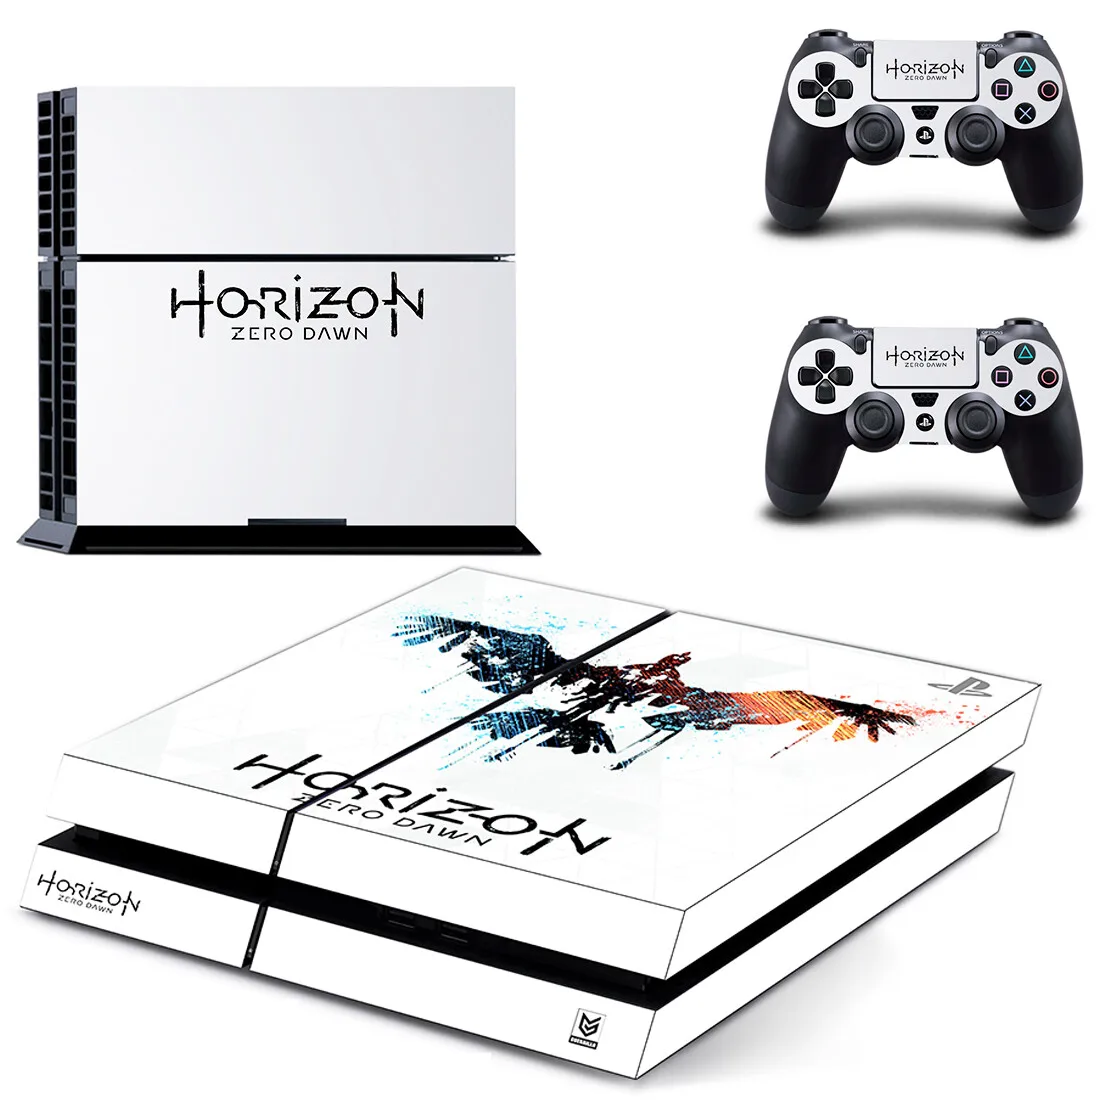 Horizon Zero Dawn PS4 наклейка s Play station 4 кожа наклейки для playstation 4 PS4 консоли и контроллера Скины Виниловые